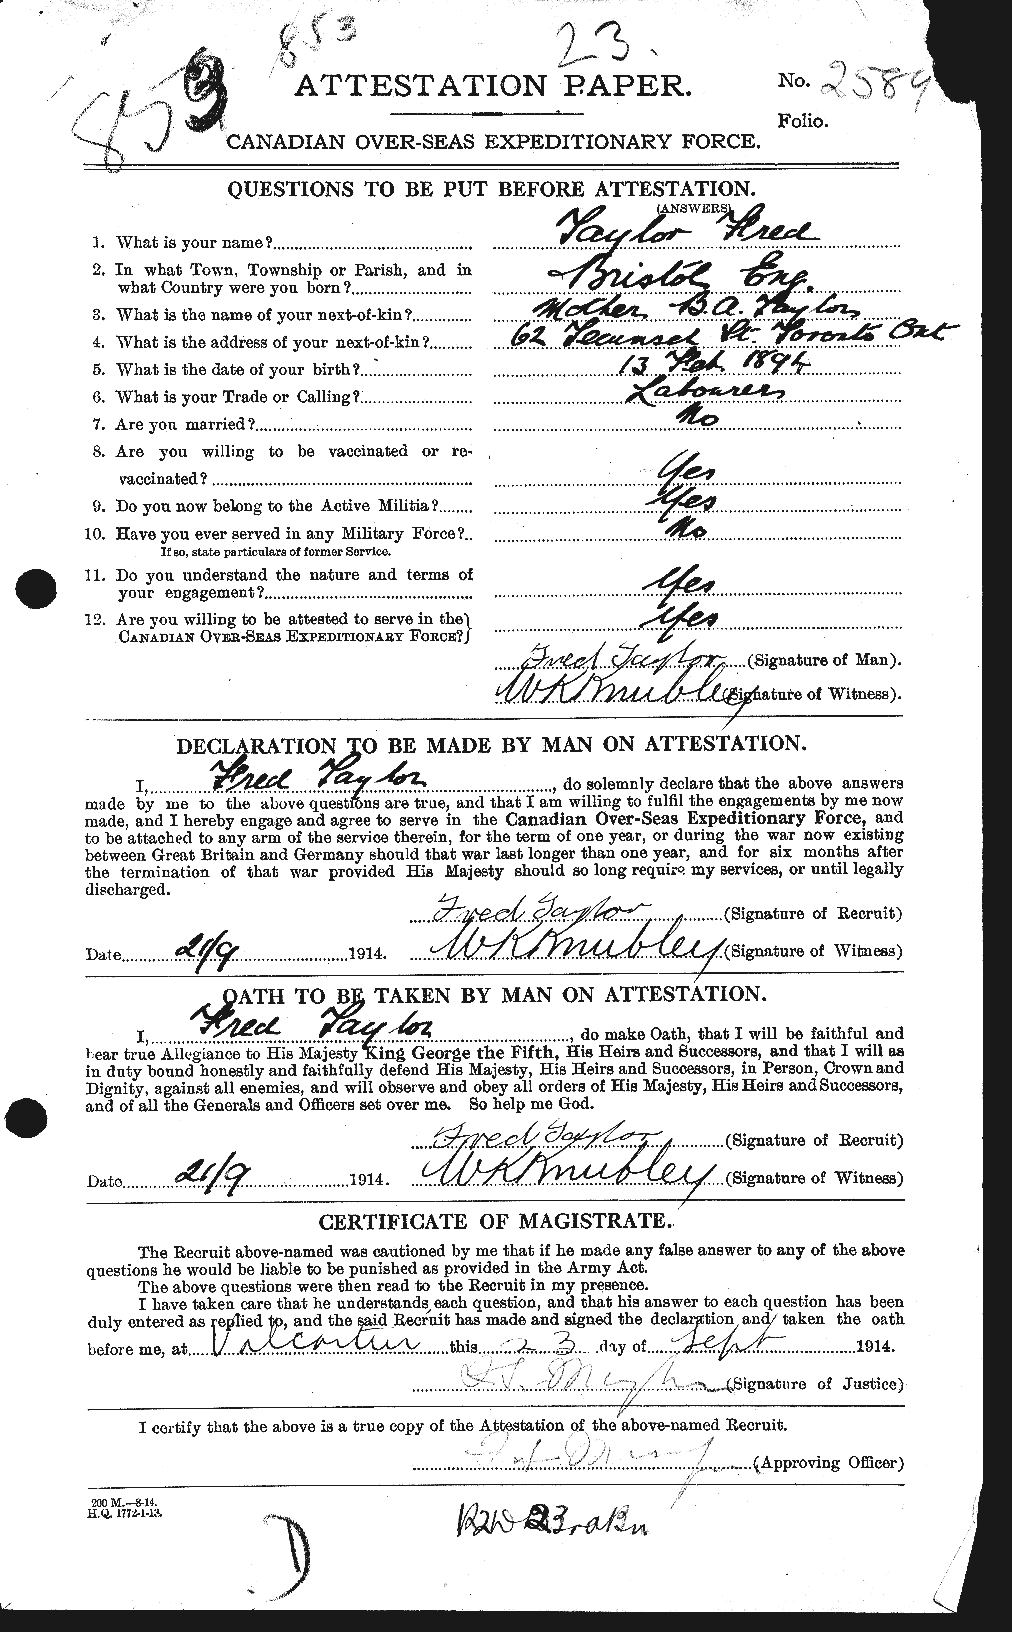 Dossiers du Personnel de la Première Guerre mondiale - CEC 625738a